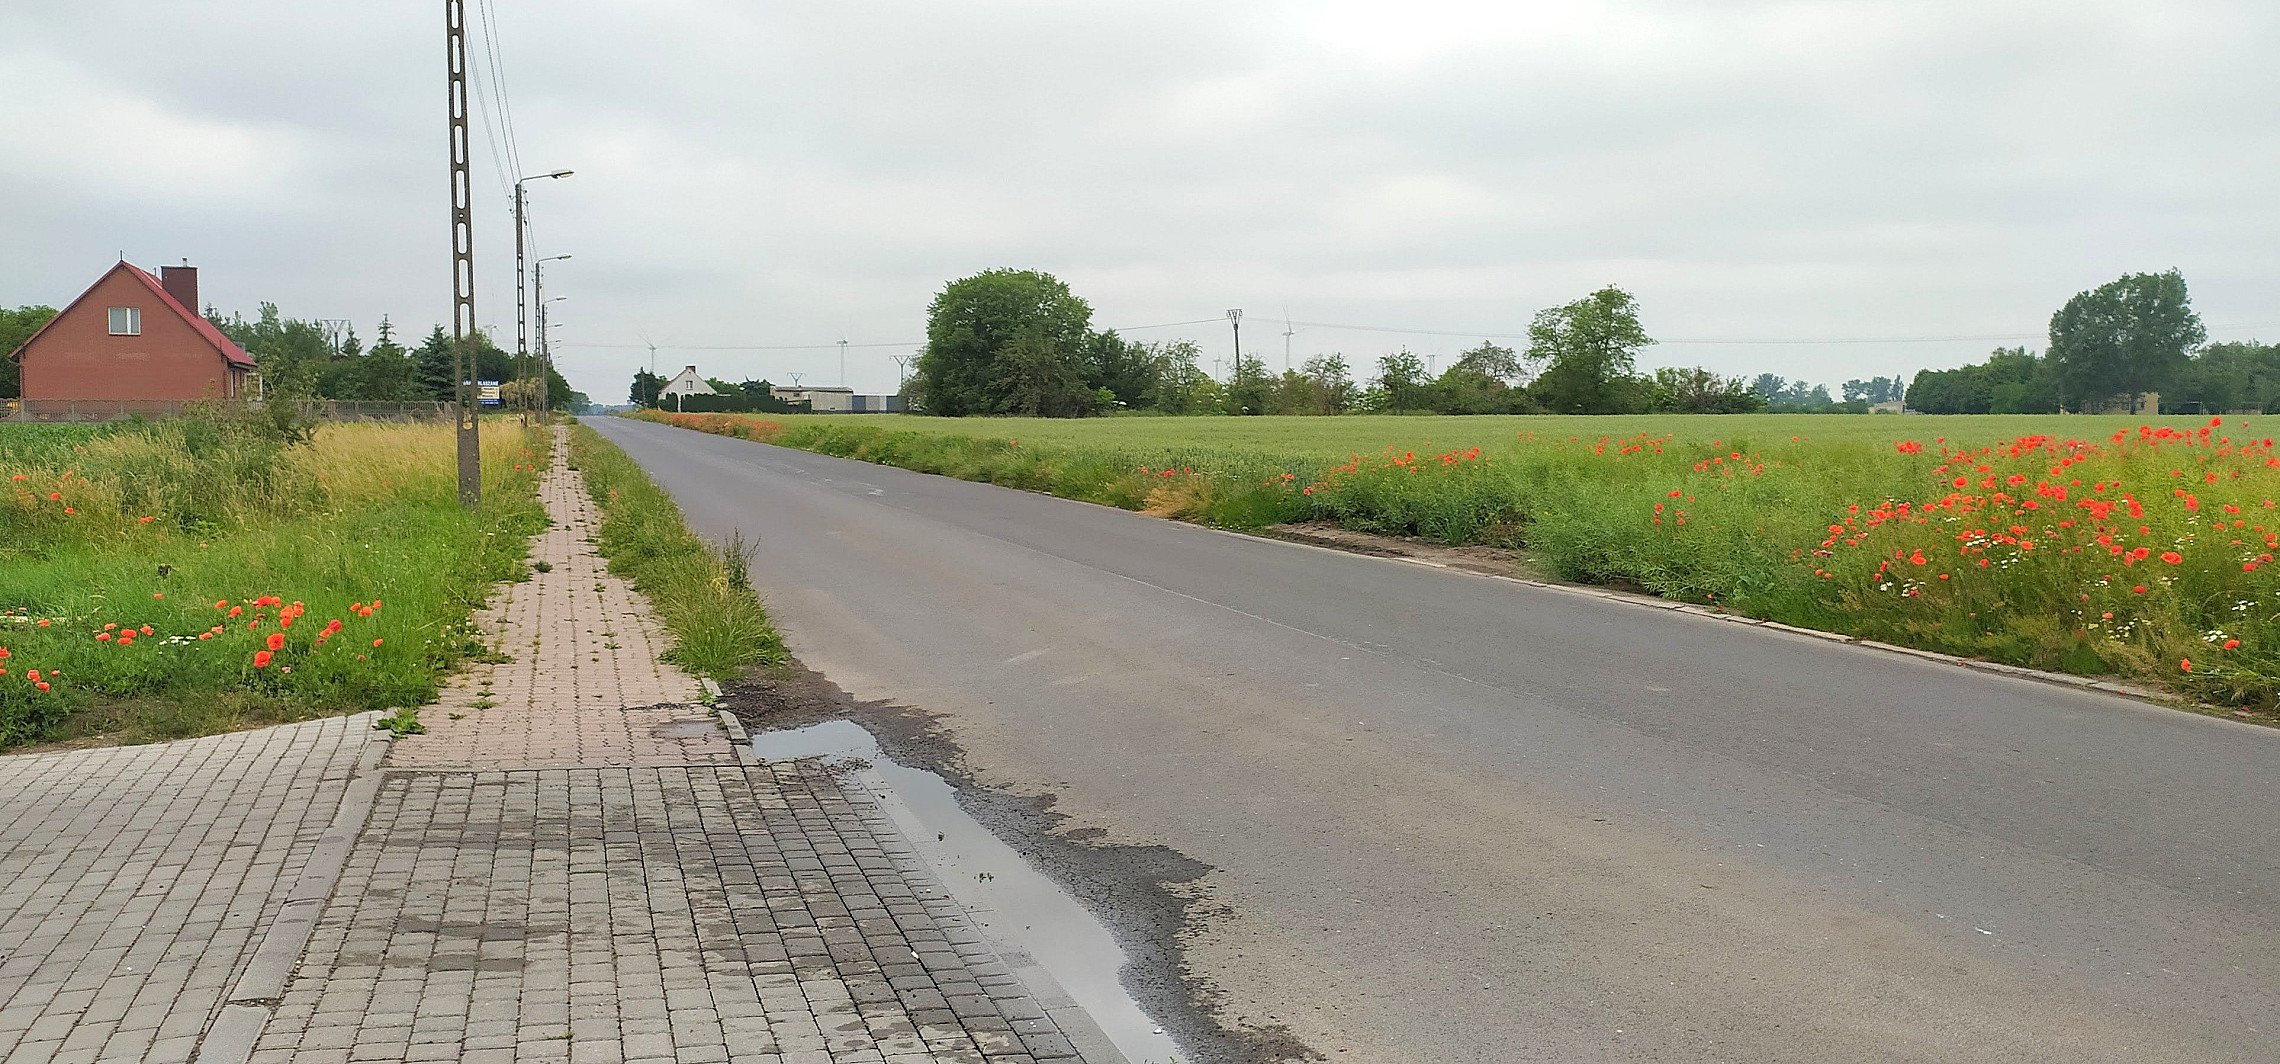 Inowrocław - Ścieżki rowerowe połączą miejscowości powiatu?